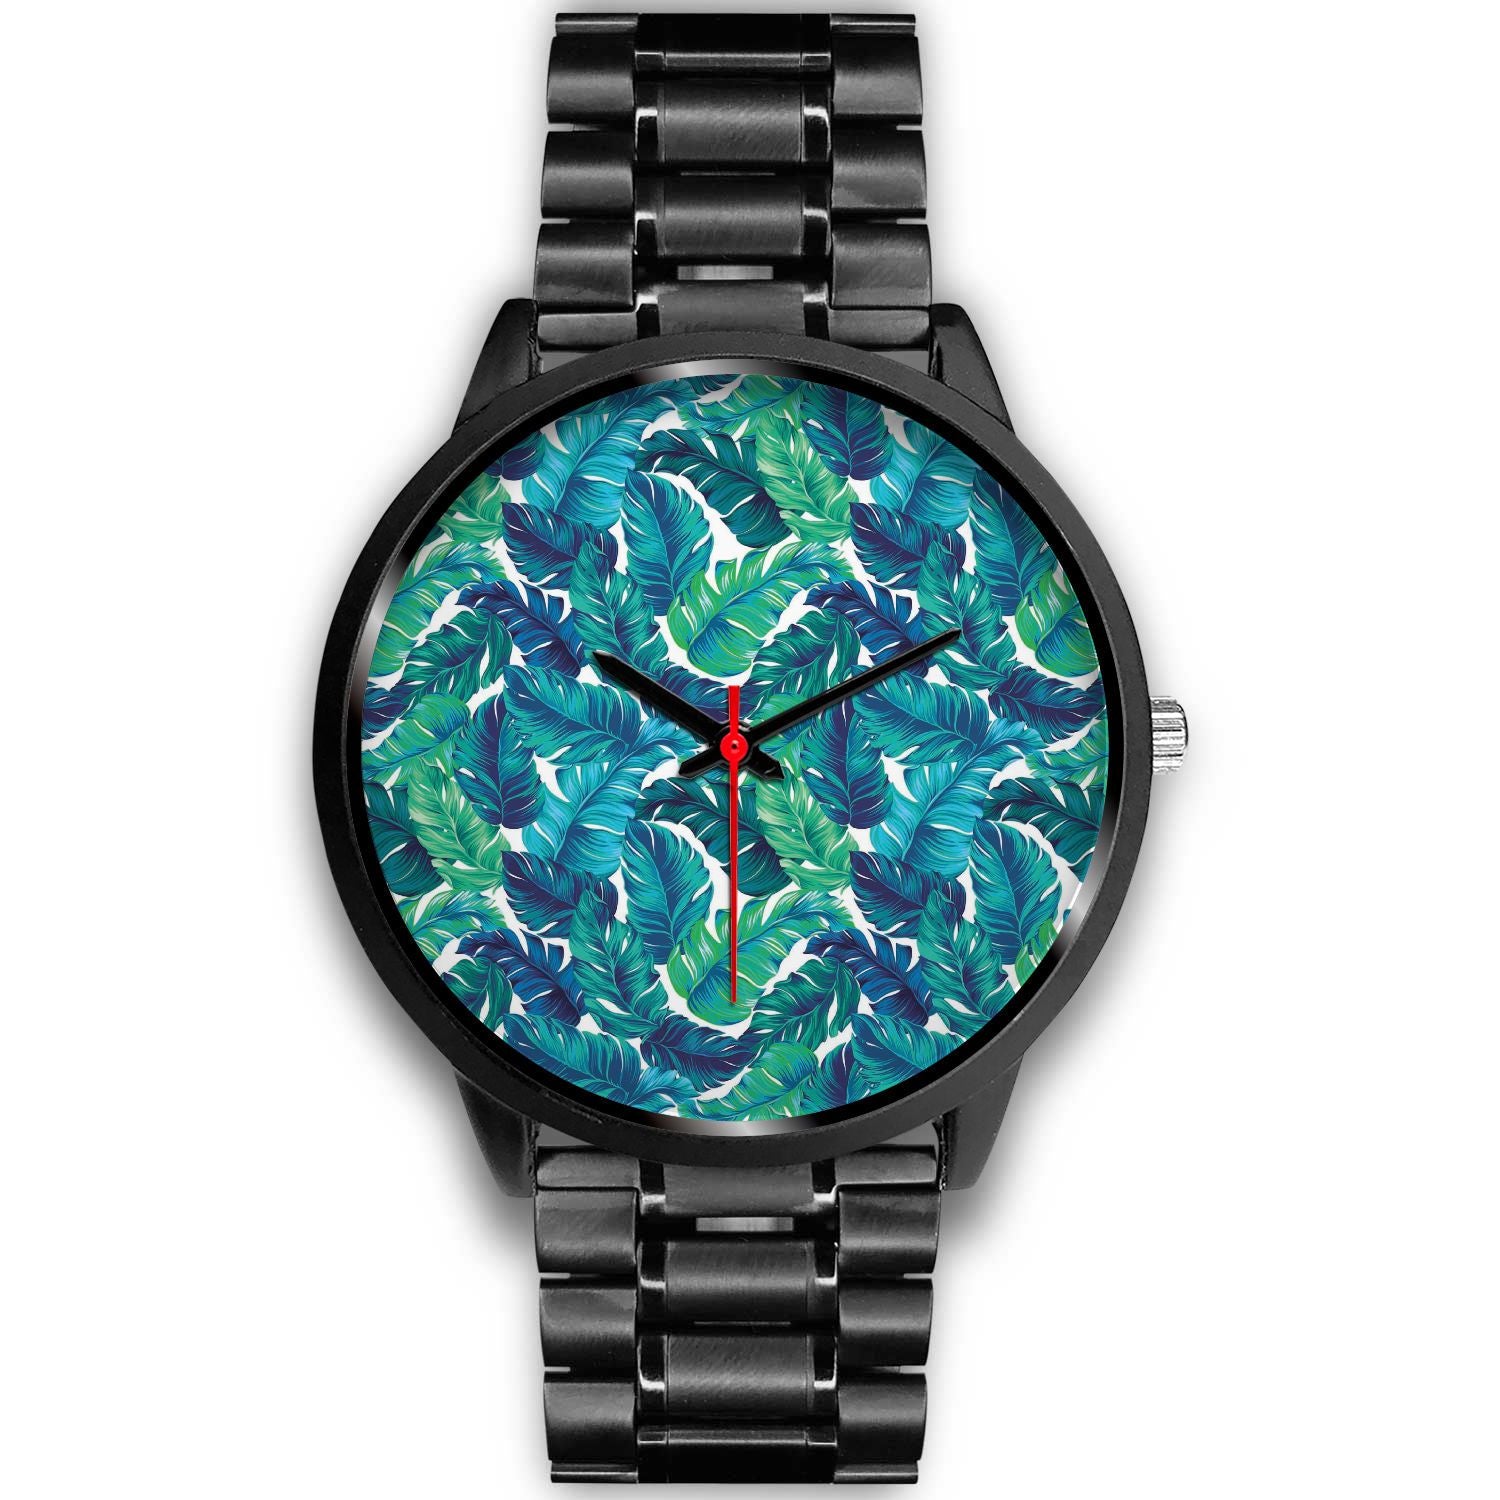 Teal Tropical Leaf Pattern Print Black Watch